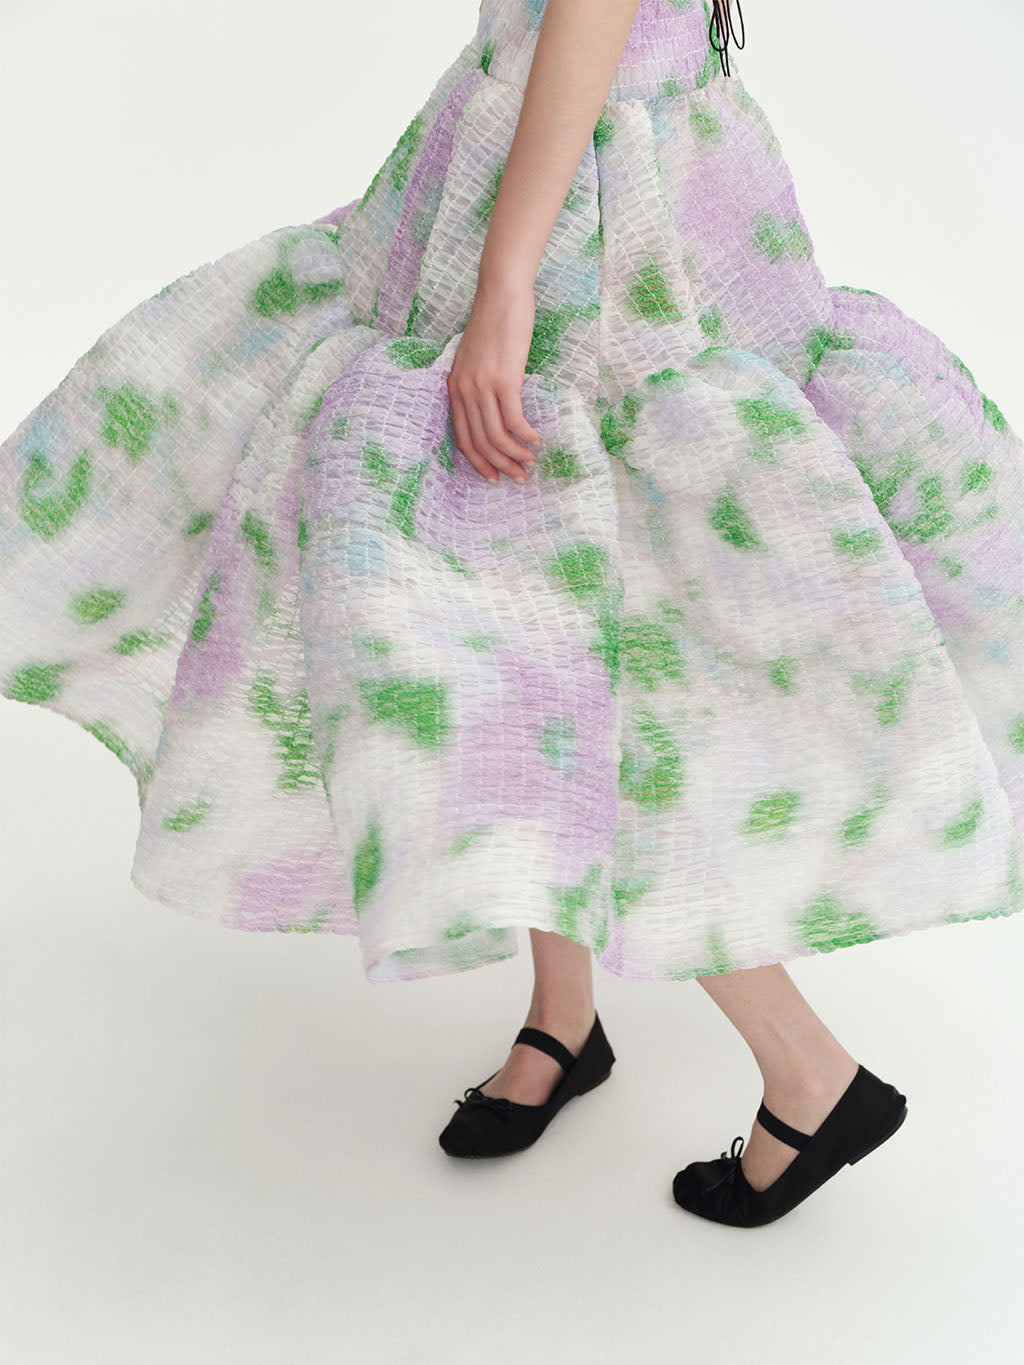 CHICTOPIA - Daisy Print Dress, buy at DOORS NYC